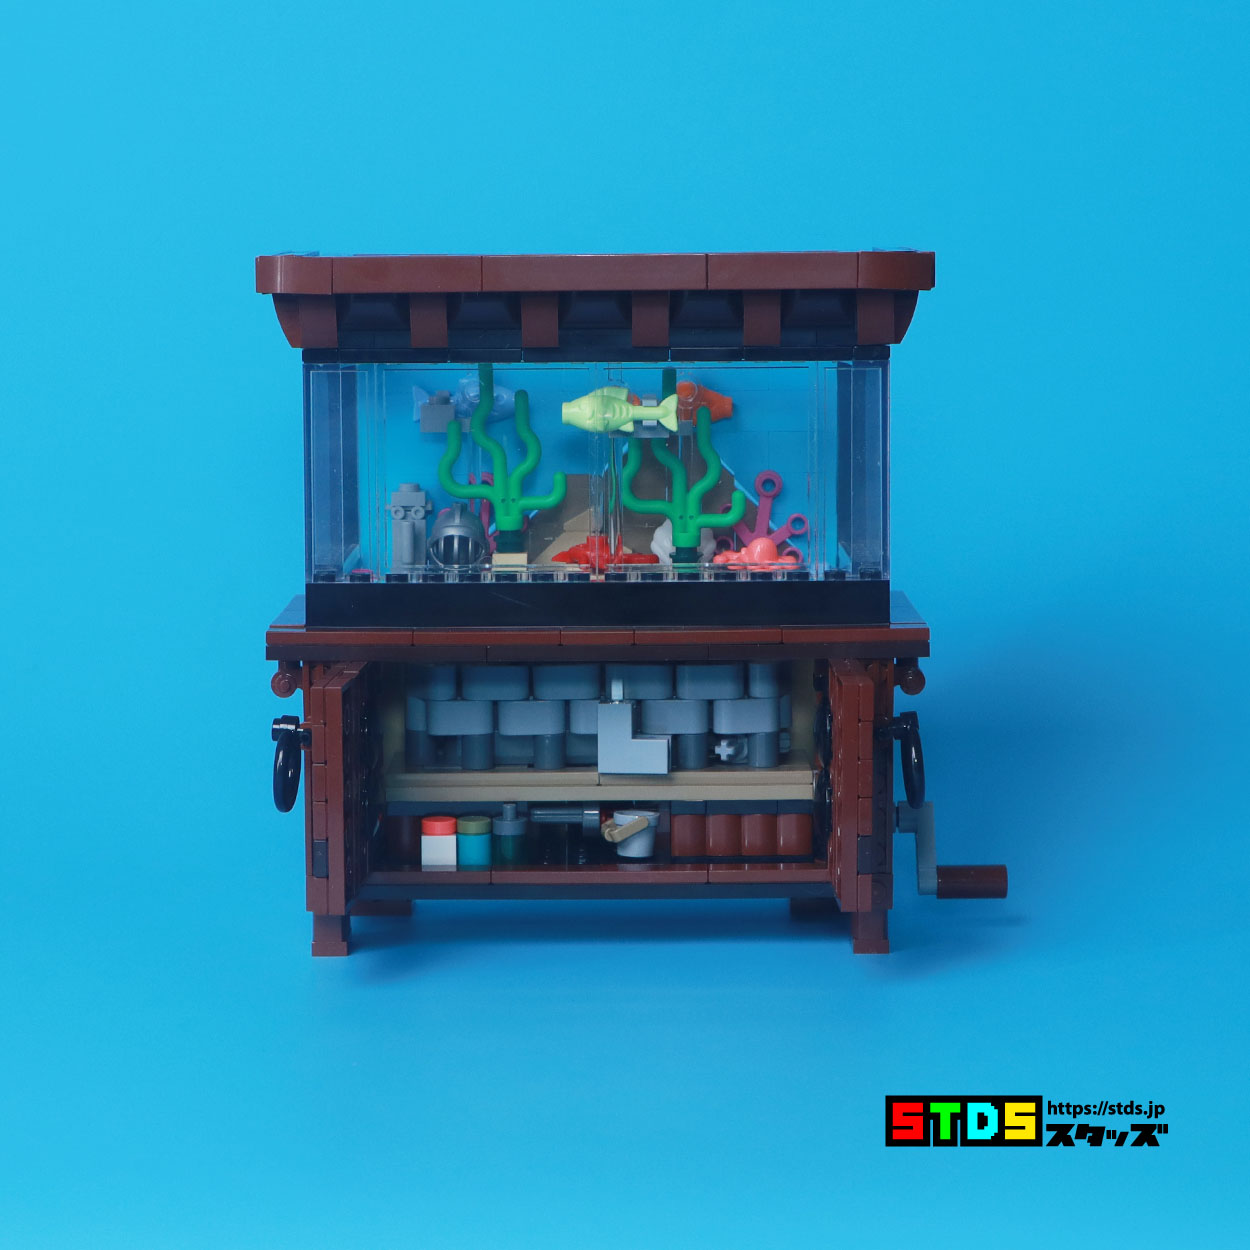 Fish Swim So Fast! LEGO Bricklink 910015 Clockwork Aquarium Review